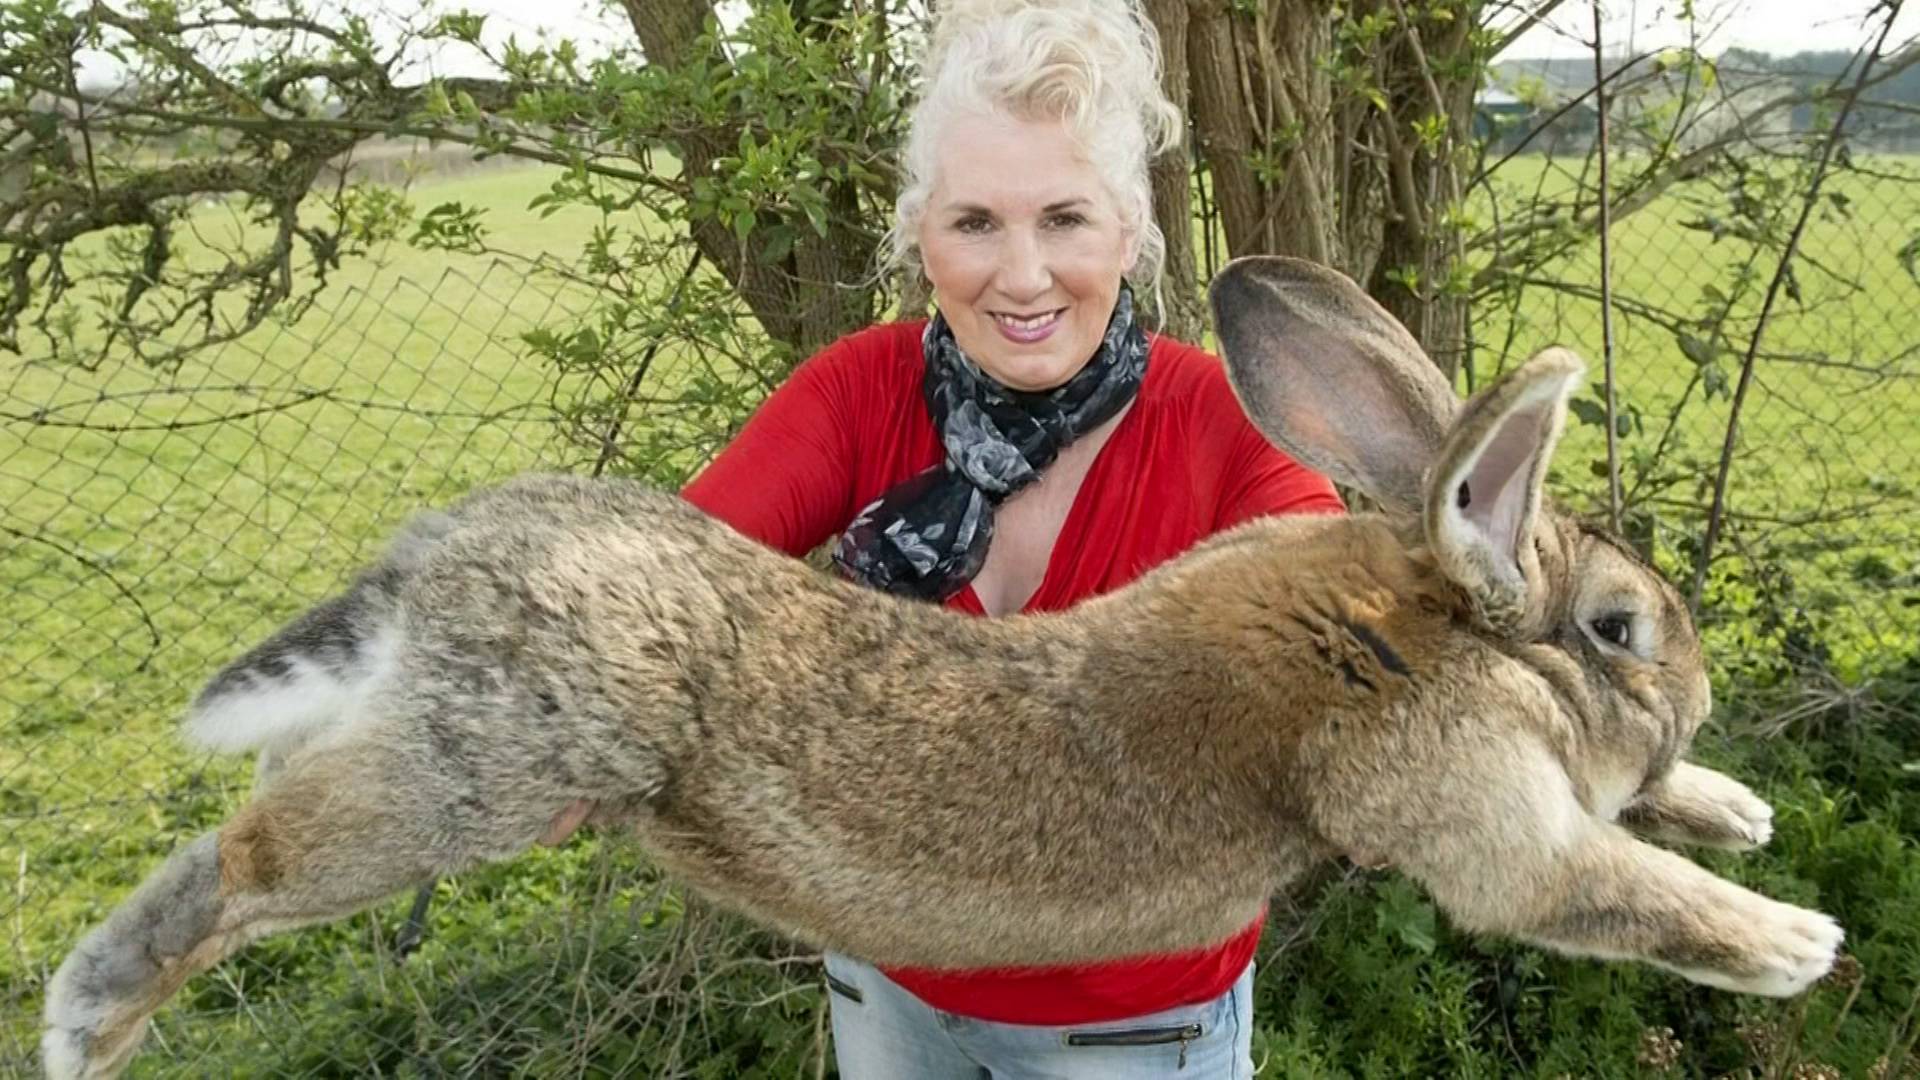 Самый большой и самый маленький кролики в мире: рекордсмены, породы и фото